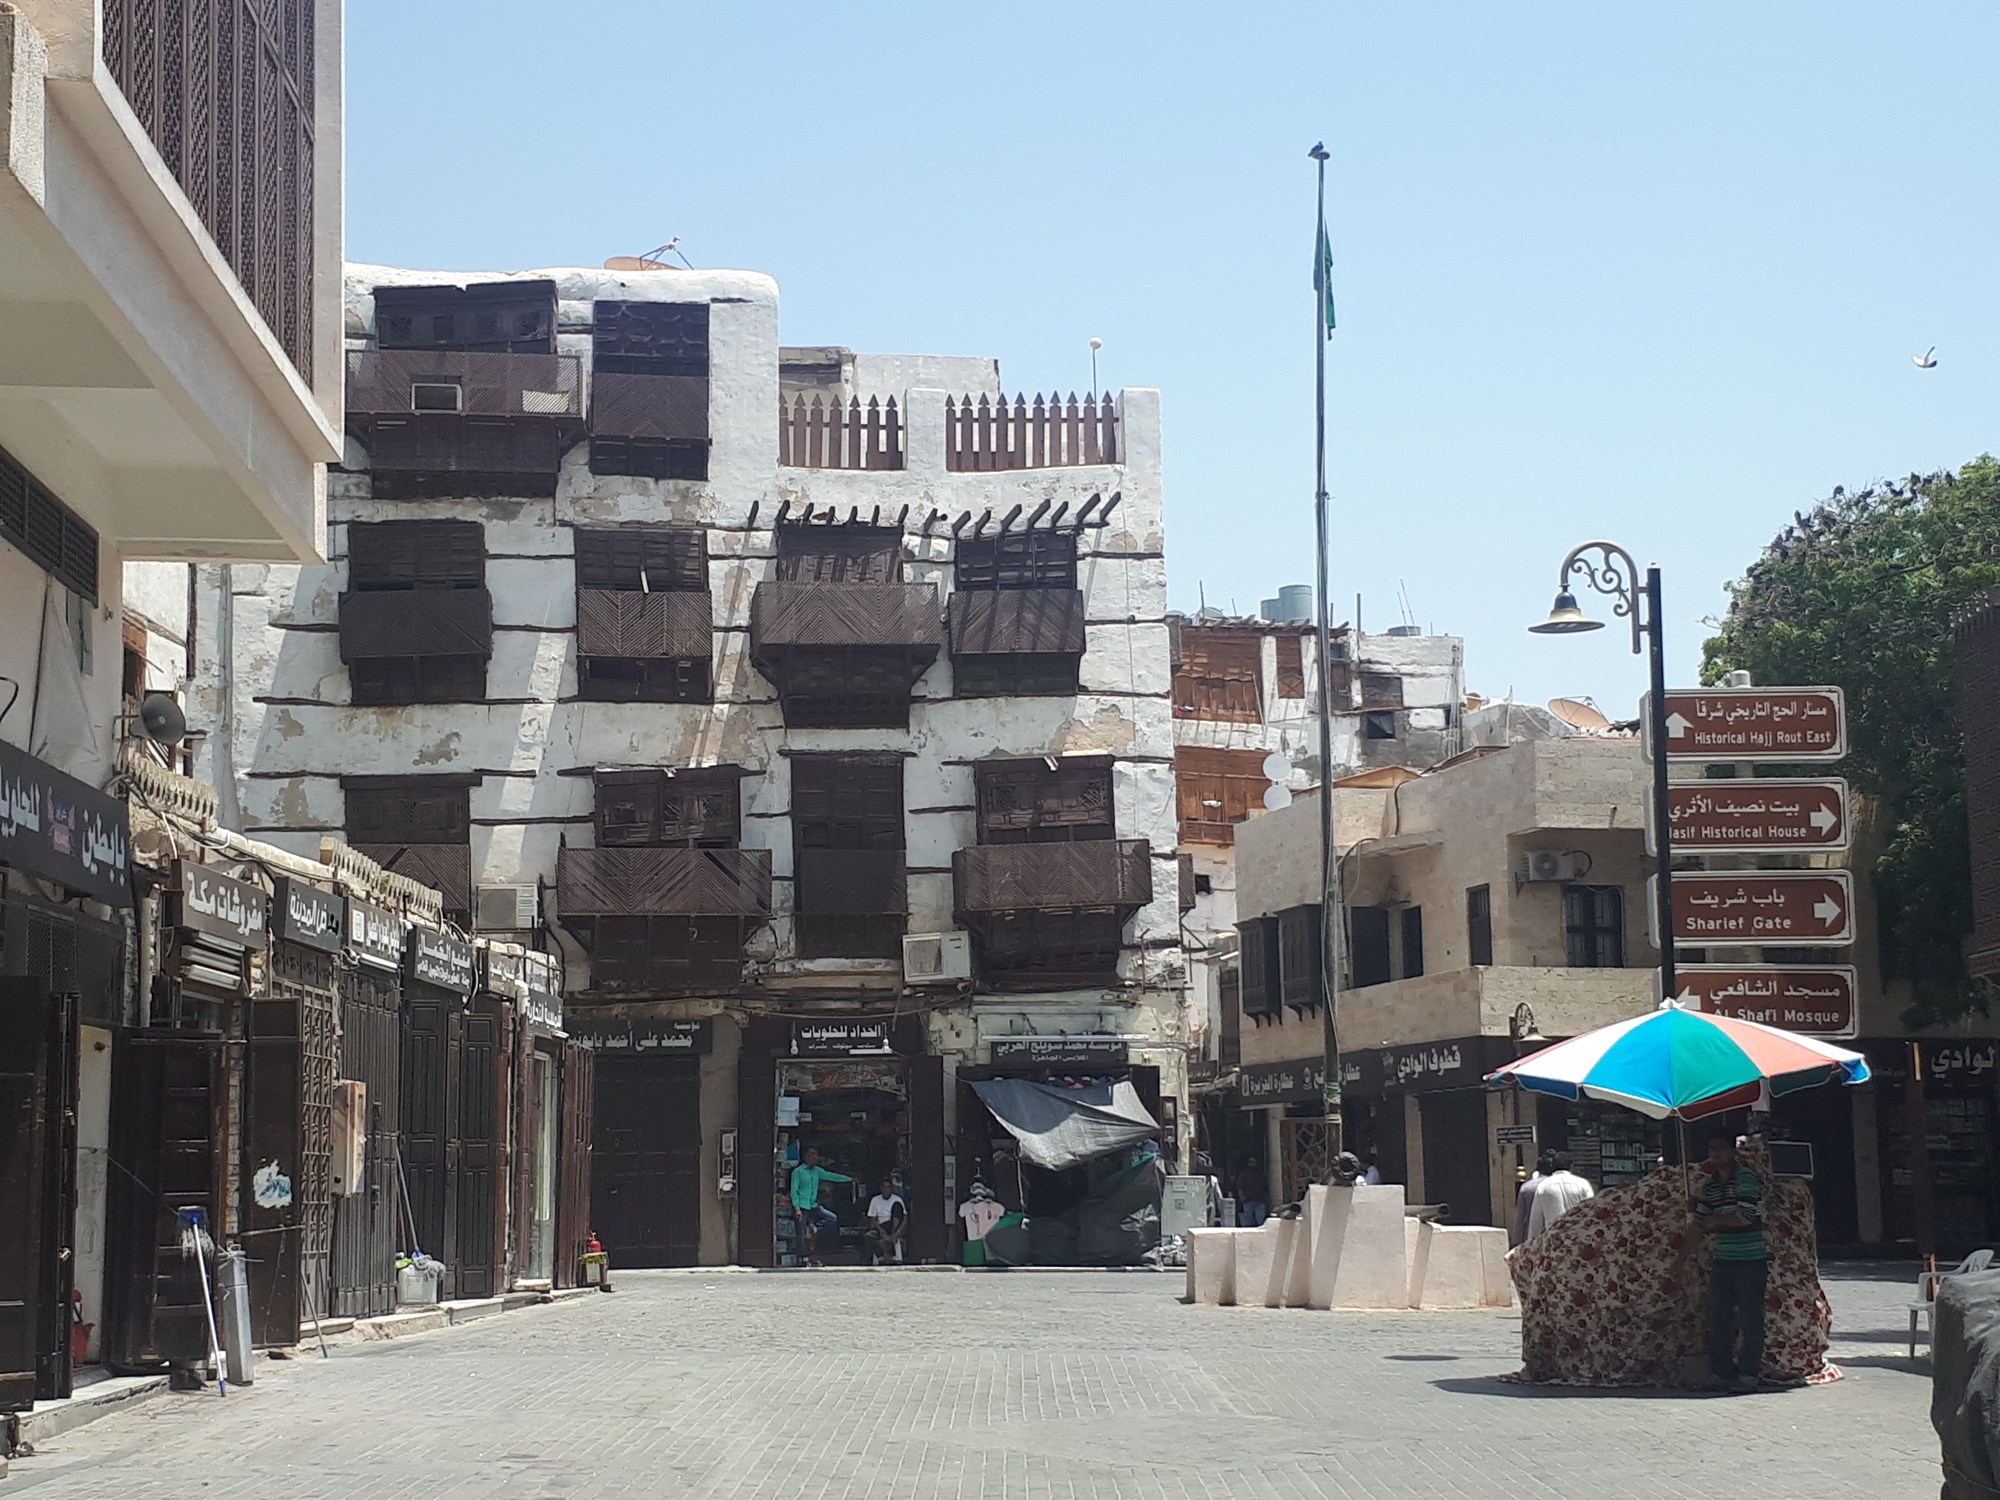 Al Balad, the old city of Jeddah (Photo: http://dontstopliving.net)